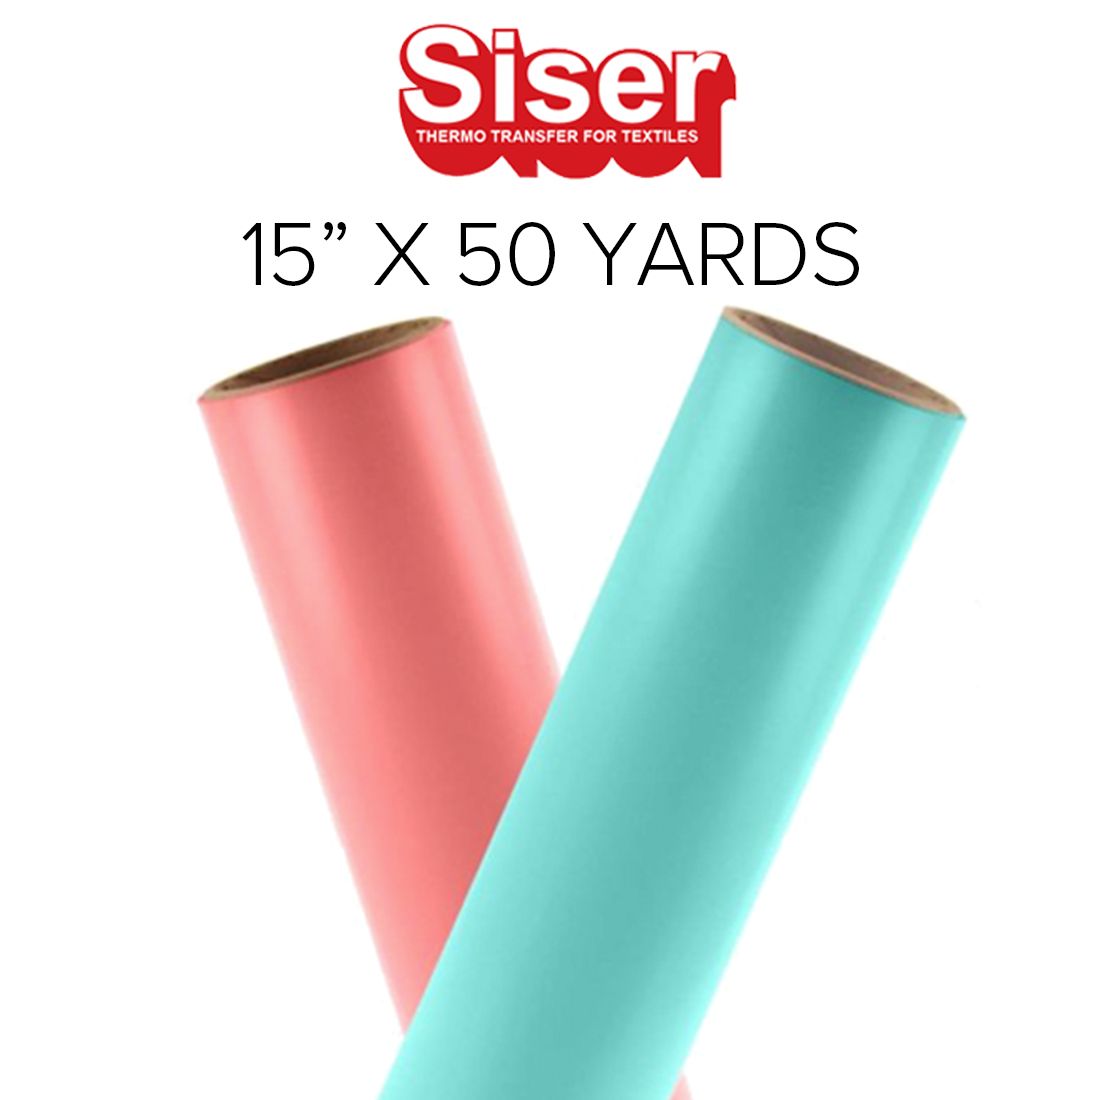 Siser EasyWeed Stretch Heat Transfer Vinyl Rolls - 15 x 50 Yards